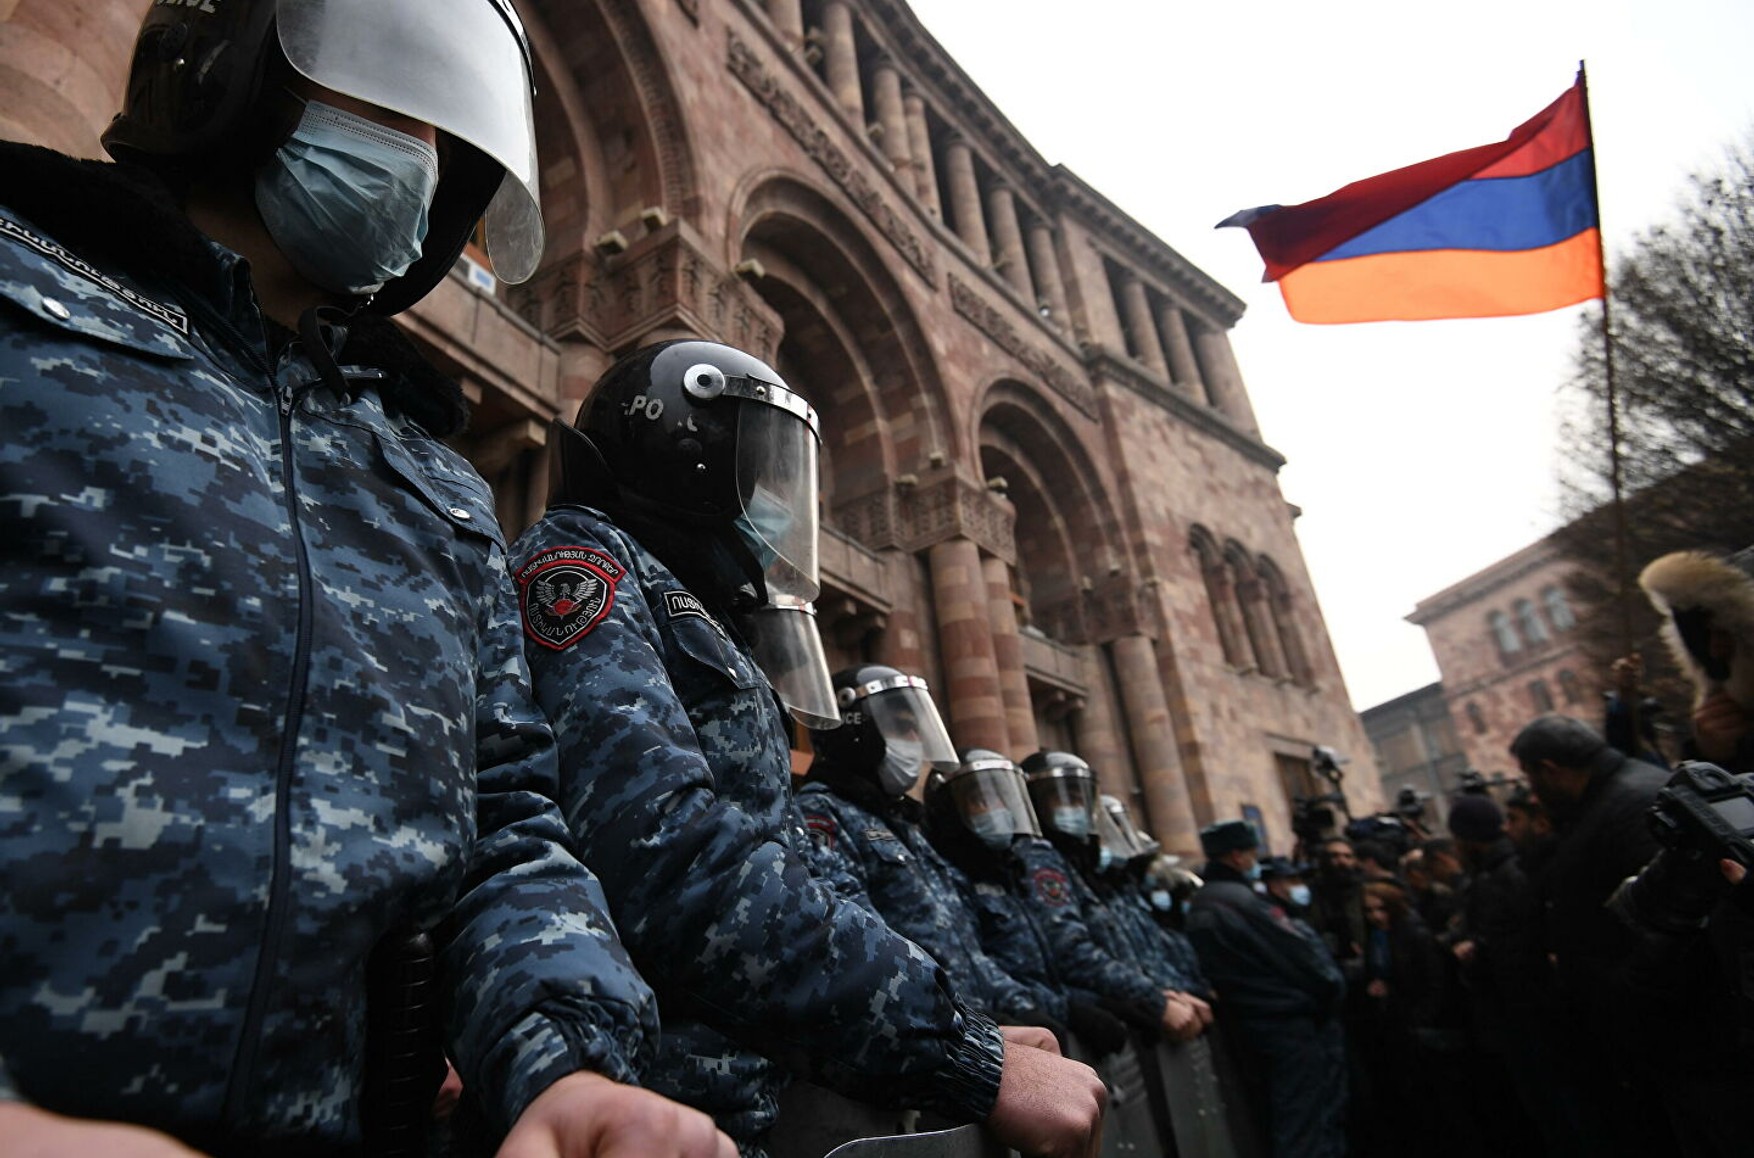 Натовп супротивників Пашиняна увірвалася в будівлю уряду Вірменії - відео